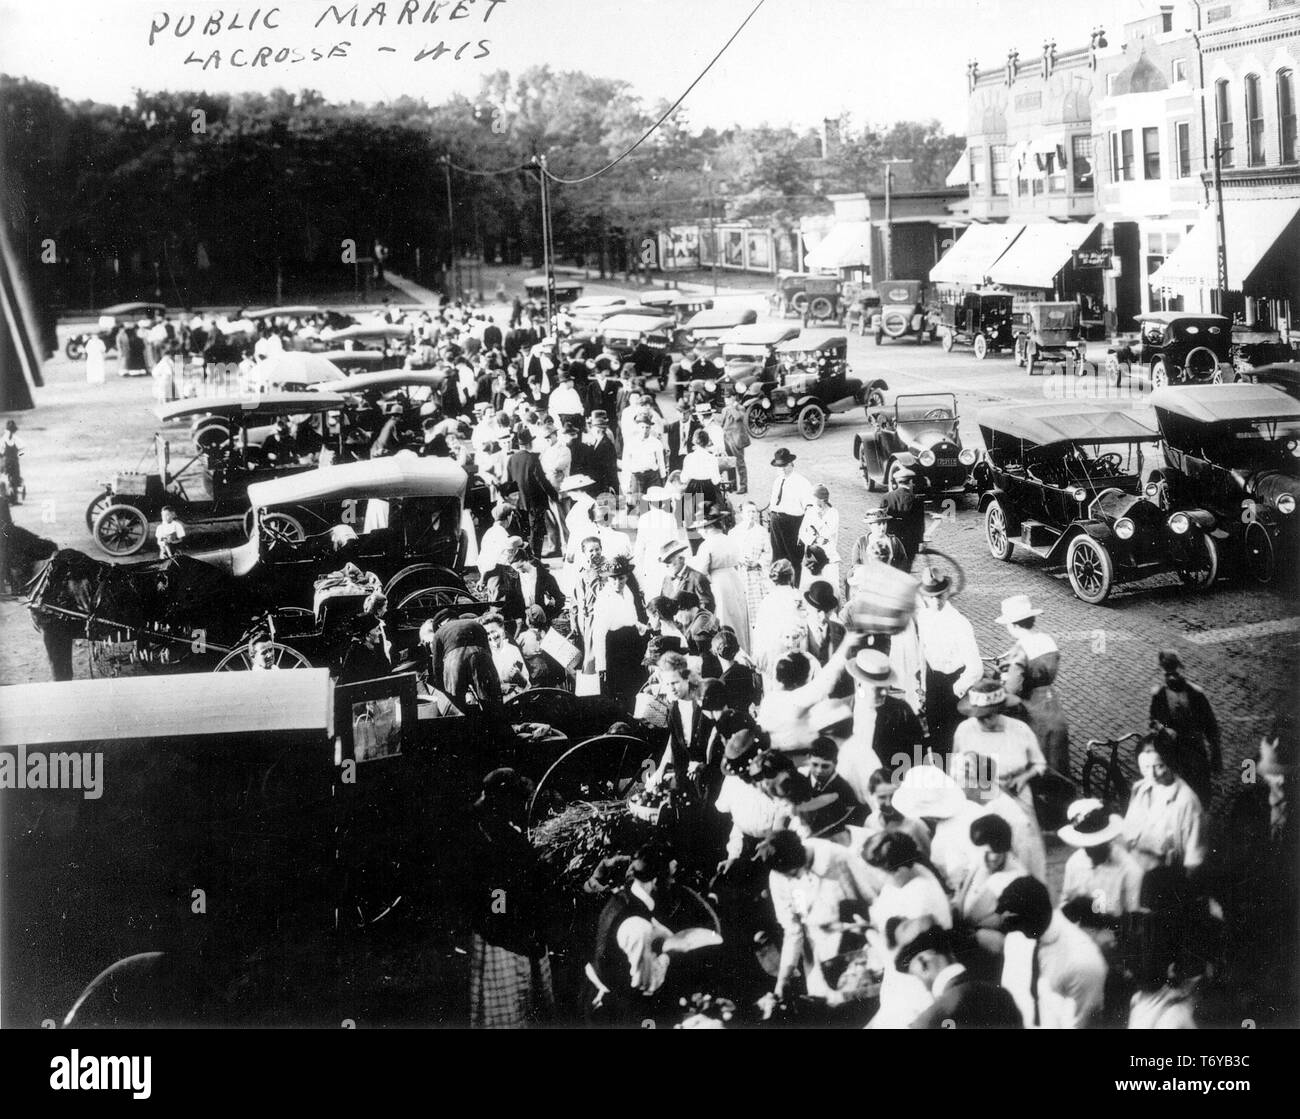 D'un grand angle de vue d'une foule de personnes se sont réunies autour de fournisseurs automobiles en stationnement au marché public de La Crosse, La Crosse, Wisconsin, 1910. Image courtoisie du département américain de l'énergie. () Banque D'Images